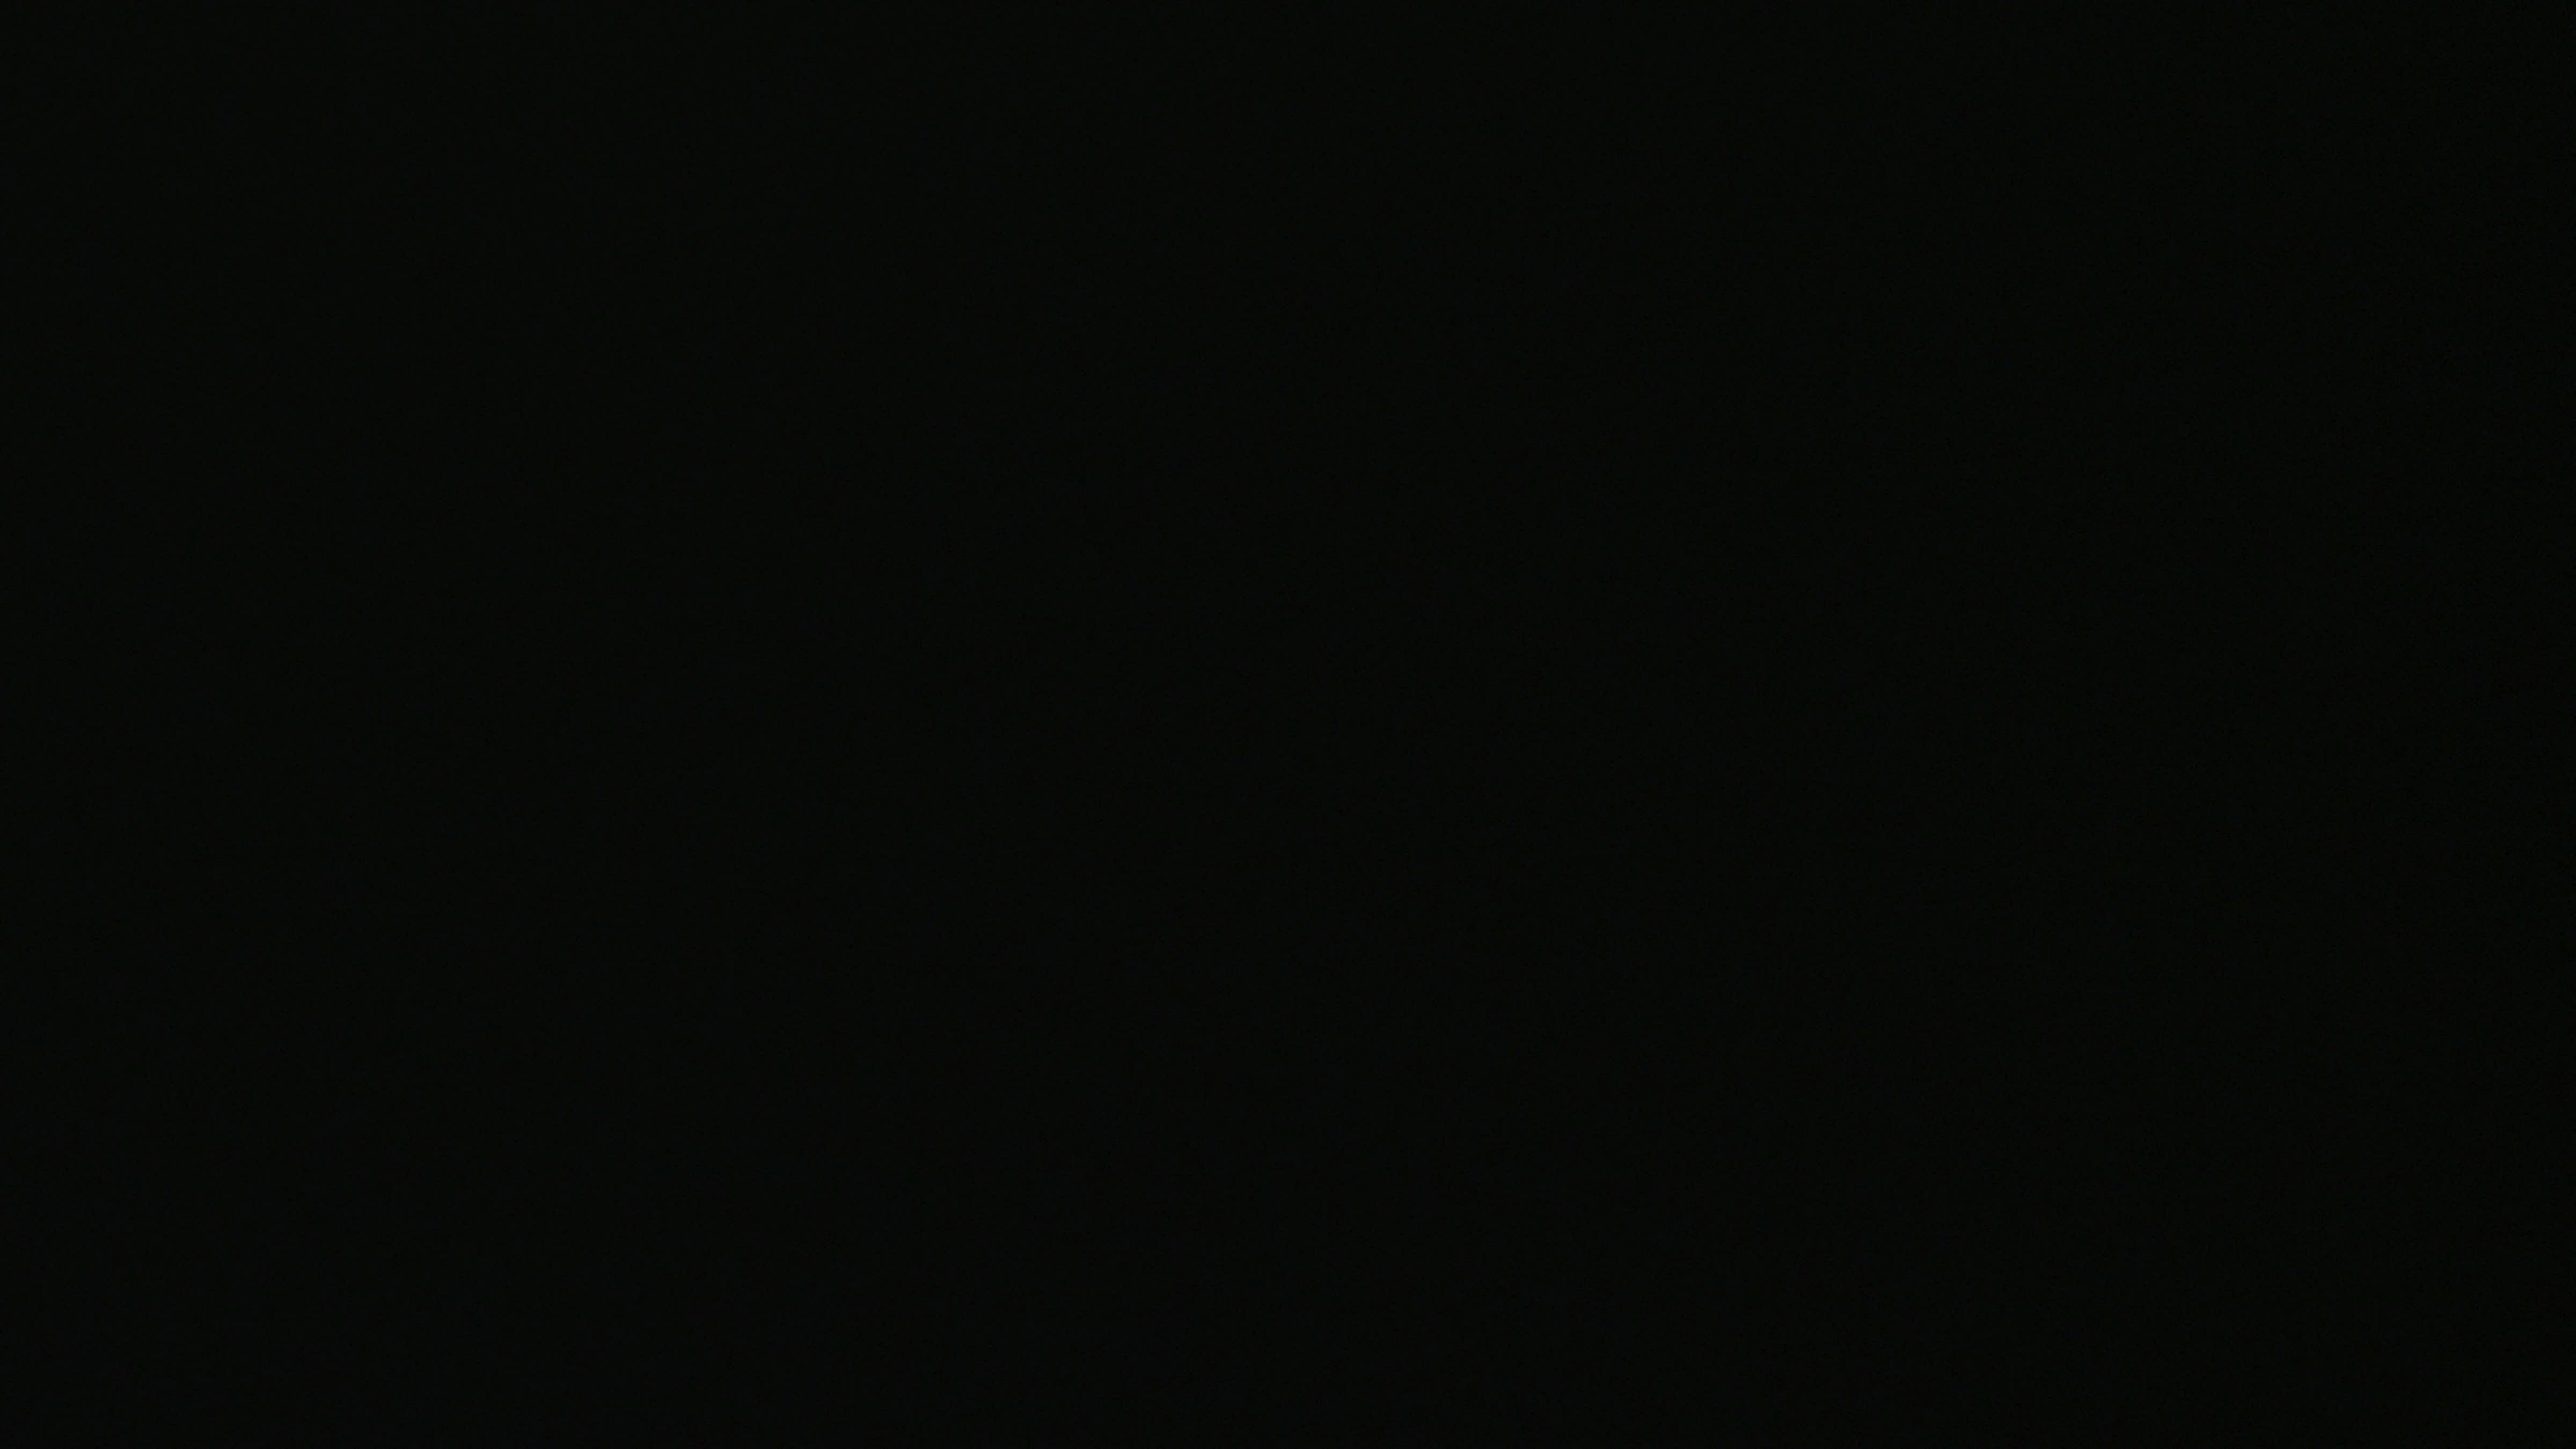 [71+] Matte Black Wallpaper | WallpaperSafari.com